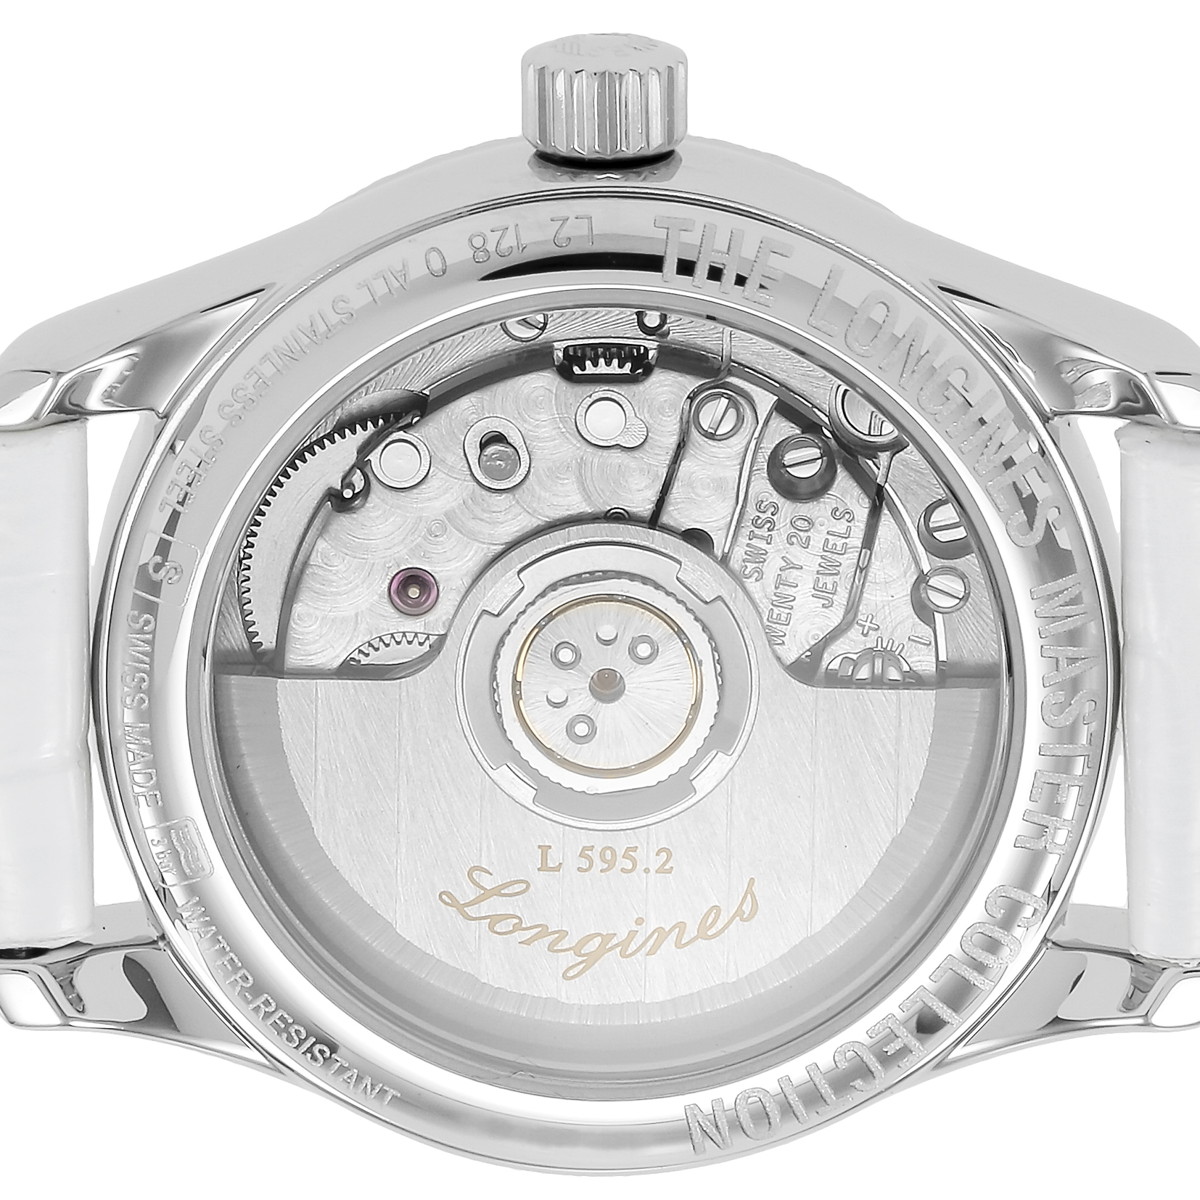 ■腕時計 レディース マスターコレクション ホワイトパール SS アリゲーター革